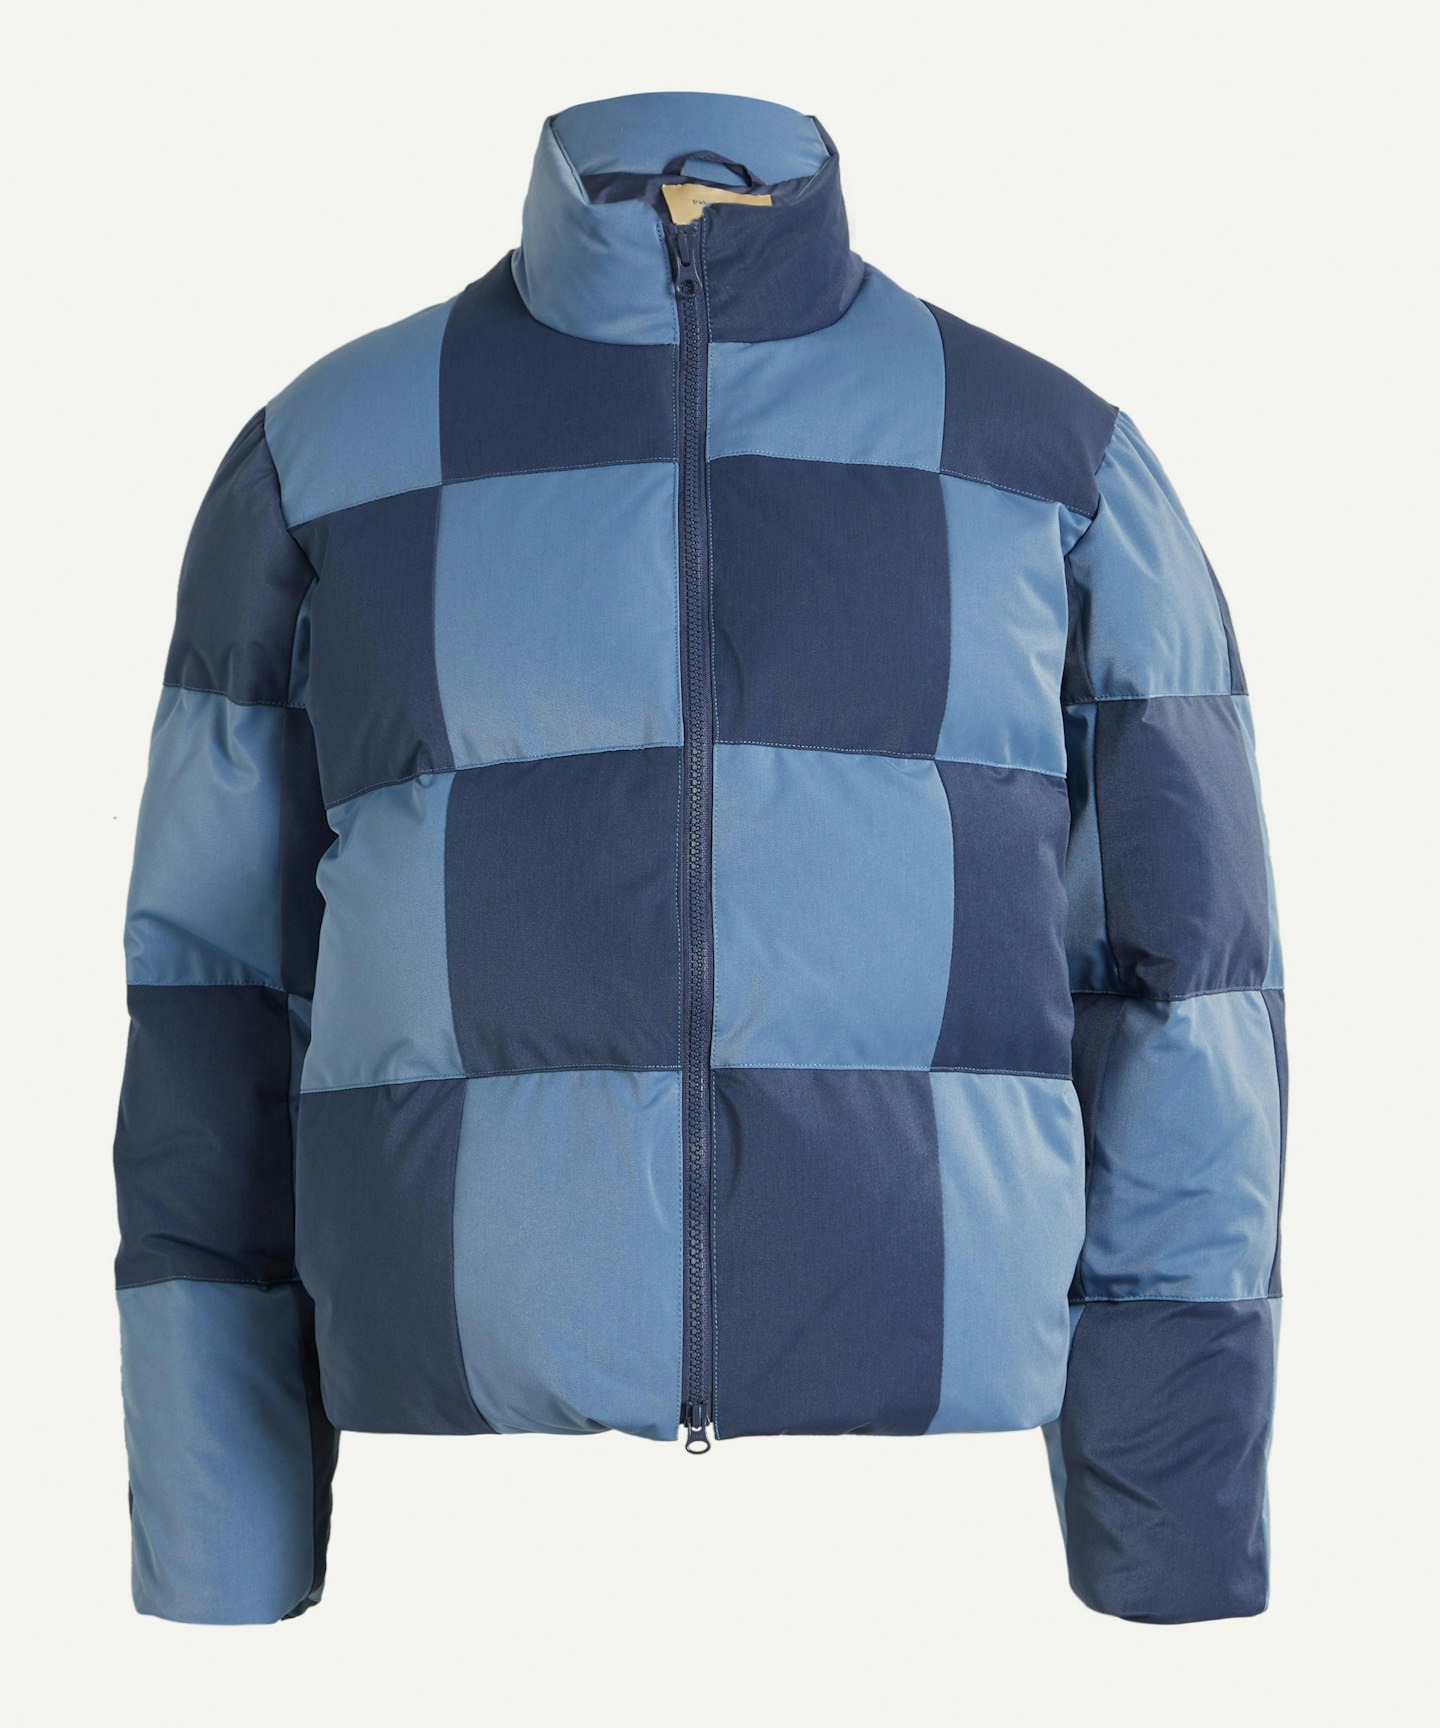 Paloma Wool, Buzz Checkered Puffer Jacket, £210